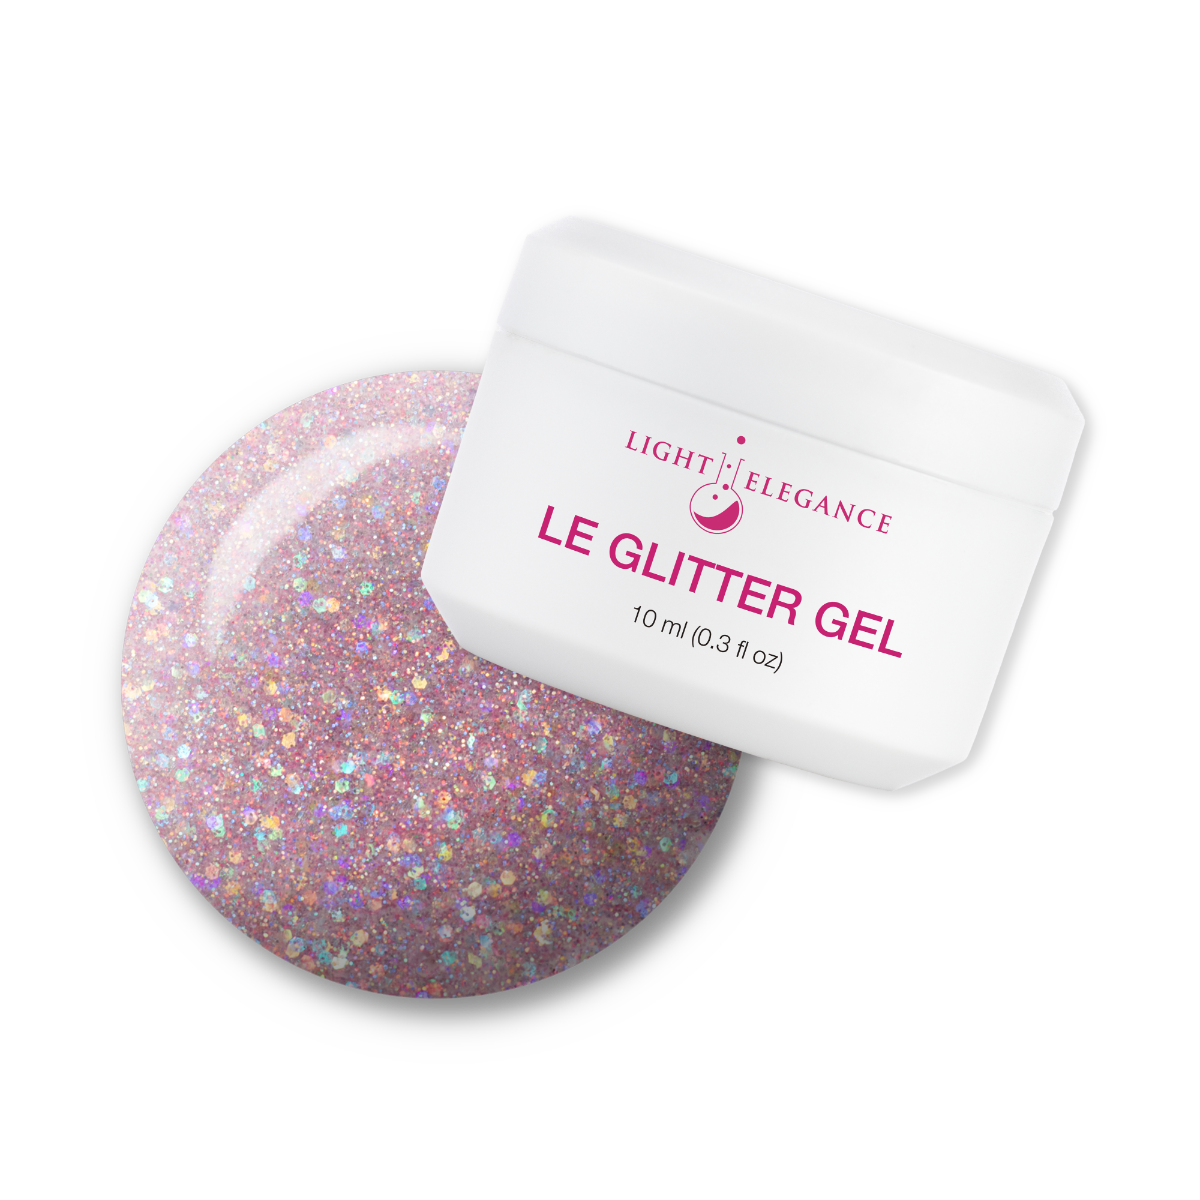 Light Elegance Glitter Gel - Free Spirit :: New Packaging